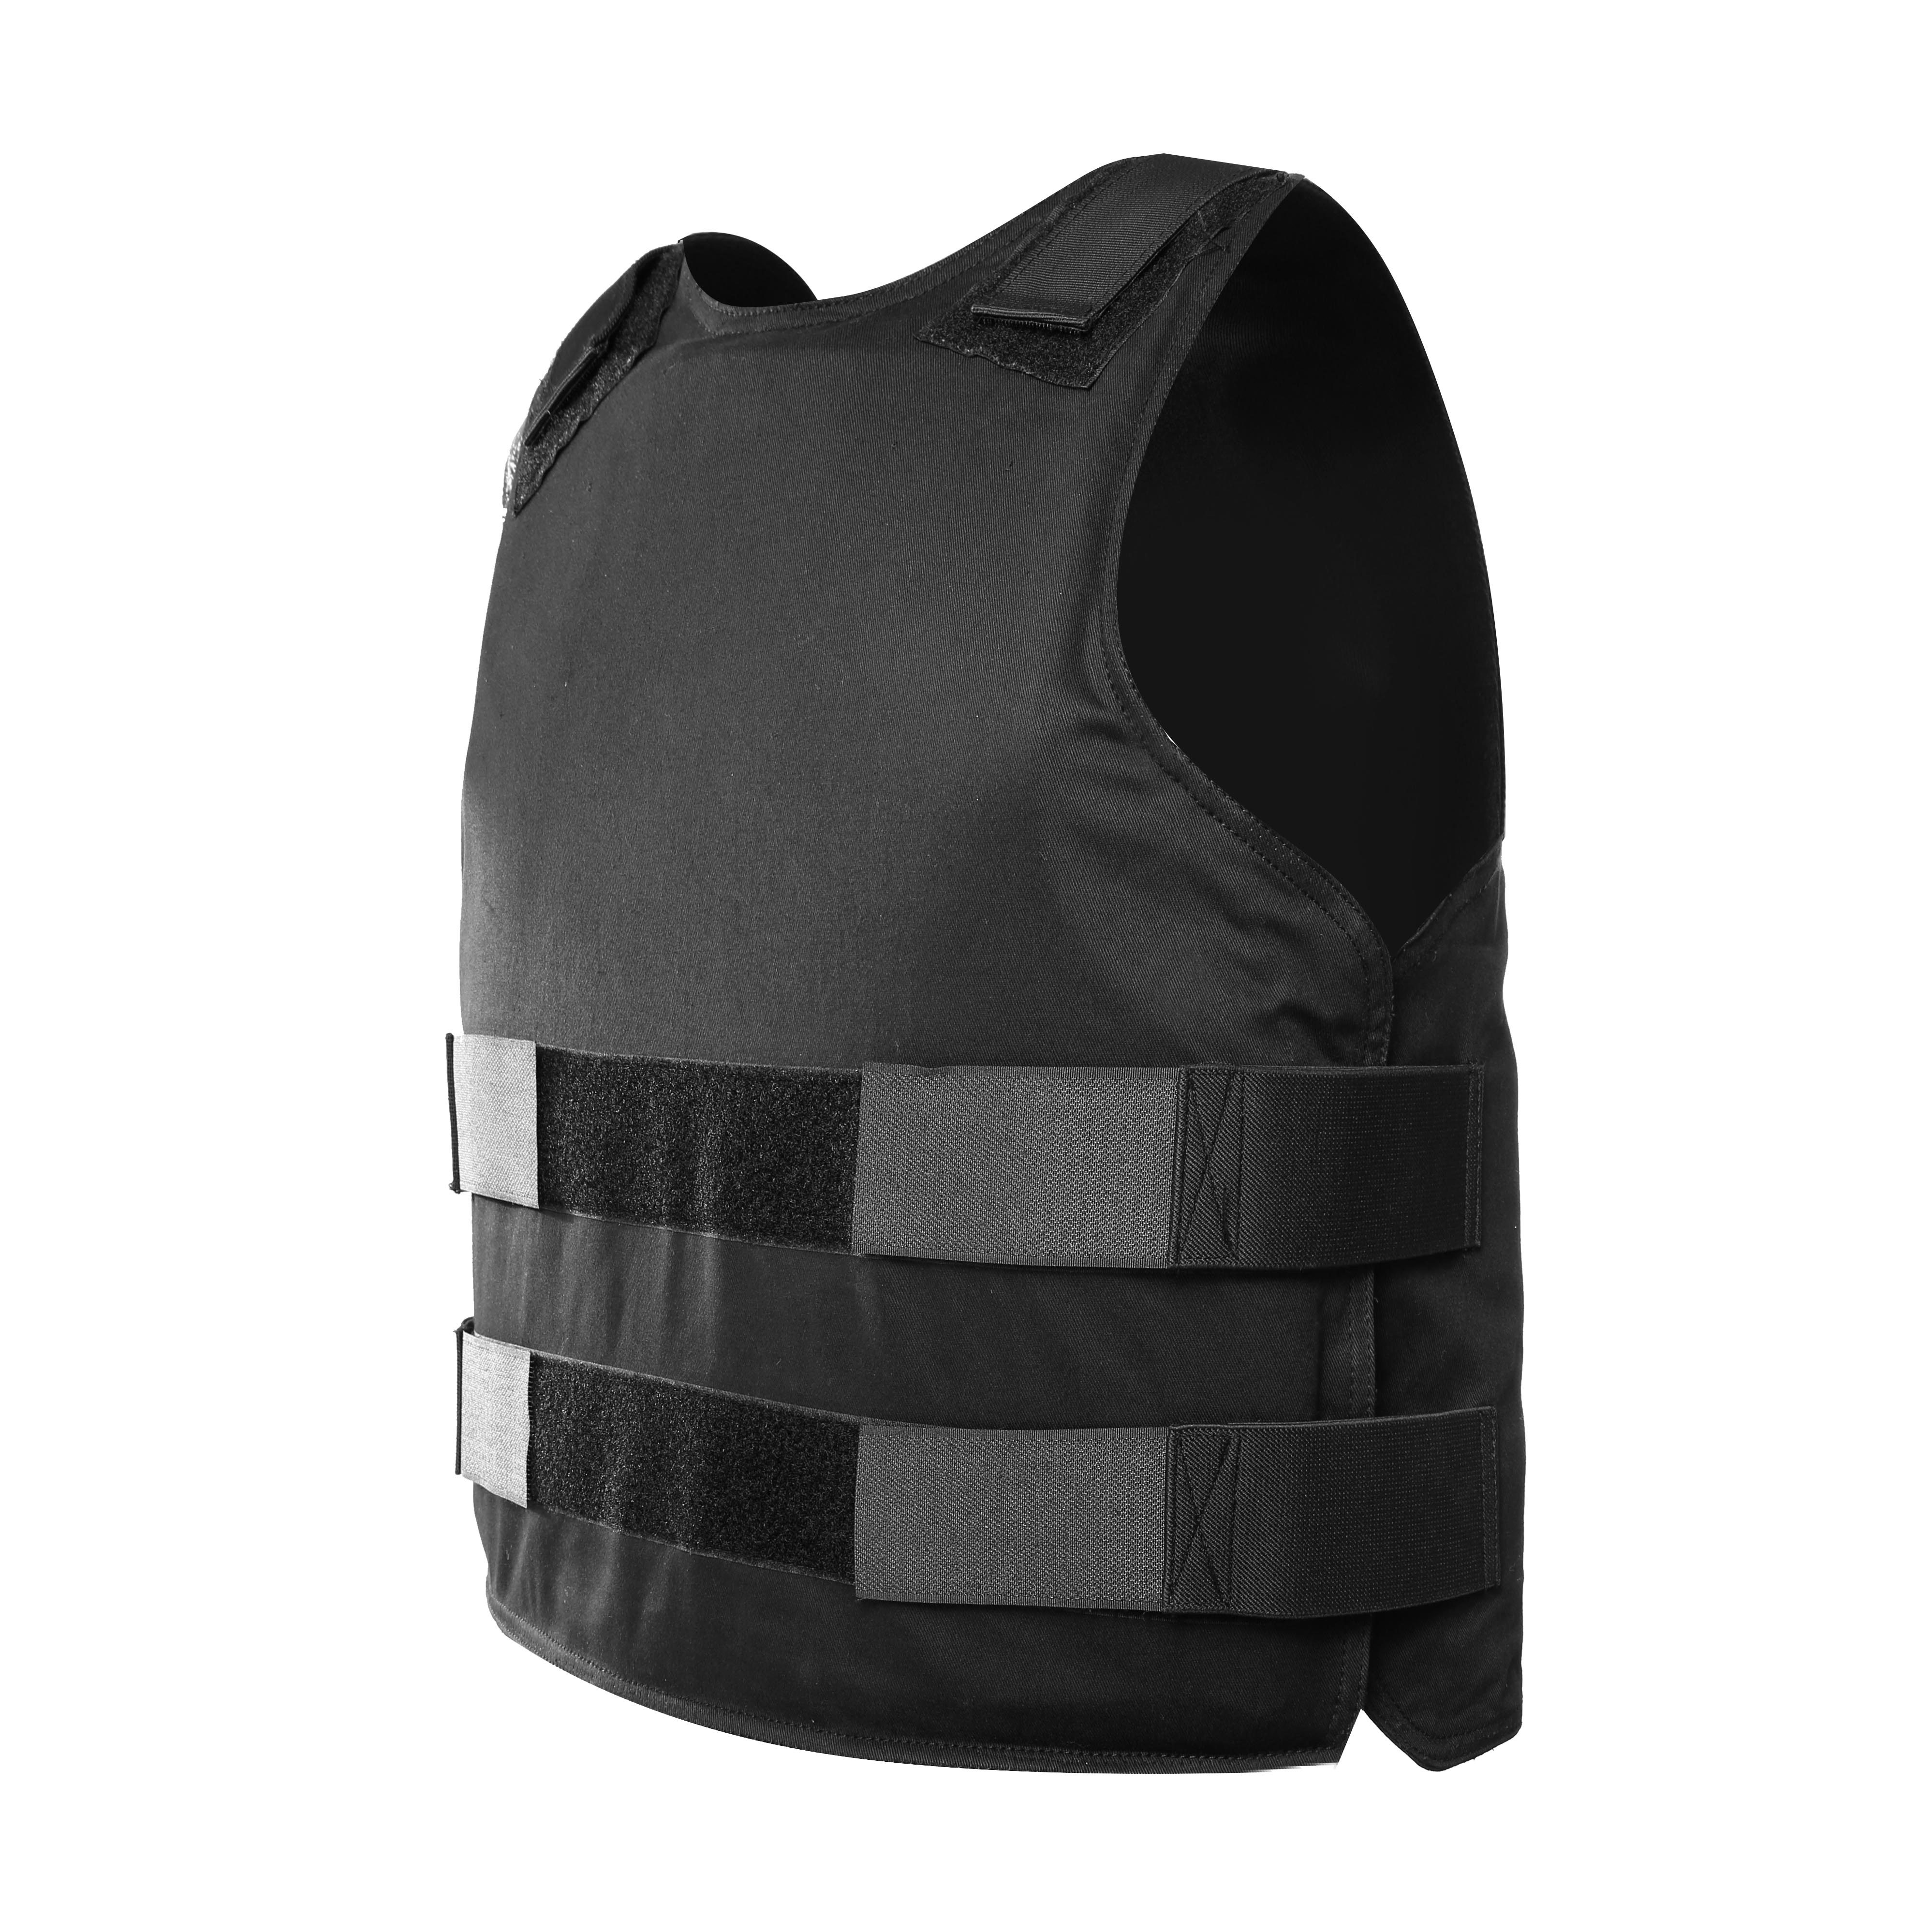 US NIJ Standard Level IIIA Bulletproof Vest